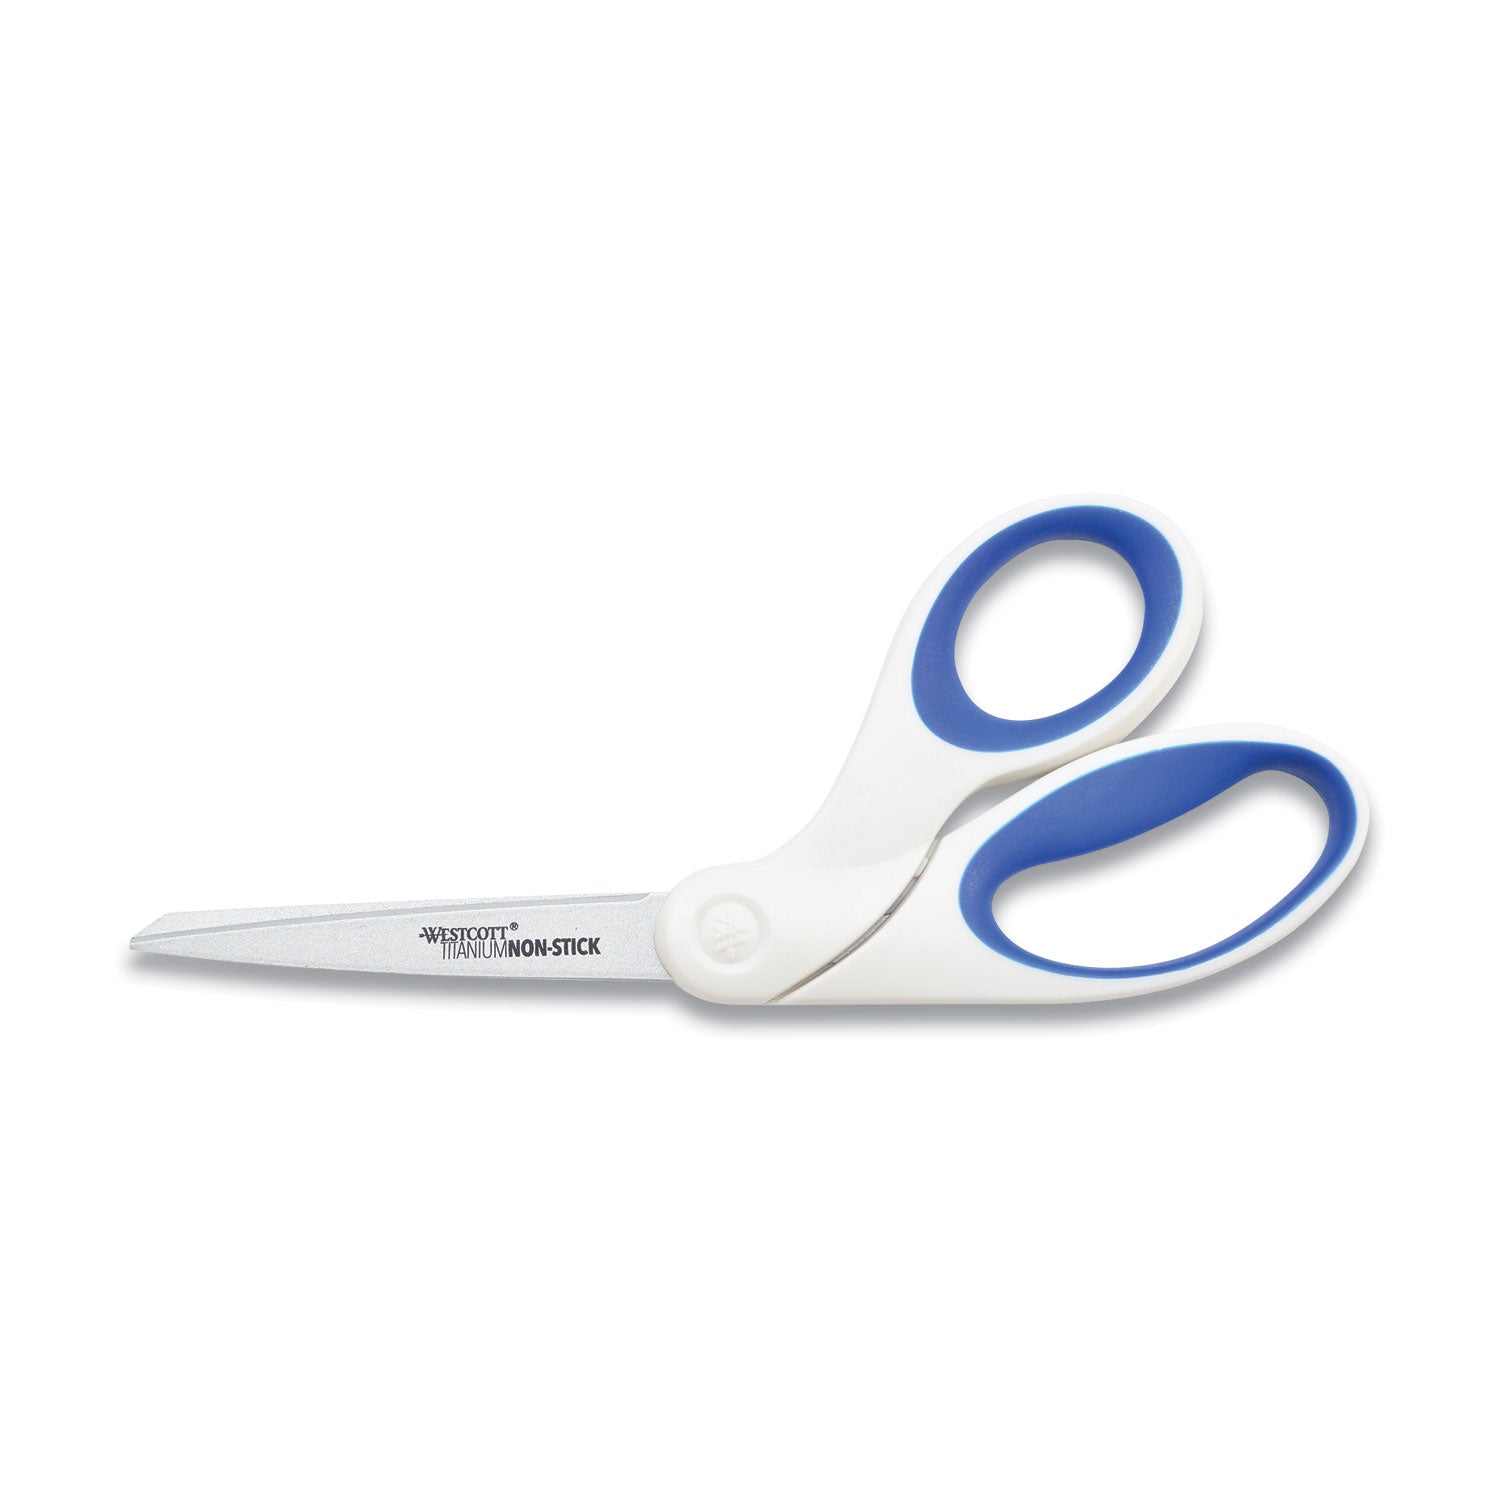 non-stick-titanium-bonded-scissors-8-long-325-cut-length-white-blue-bent-handle_acmacm16578 - 1